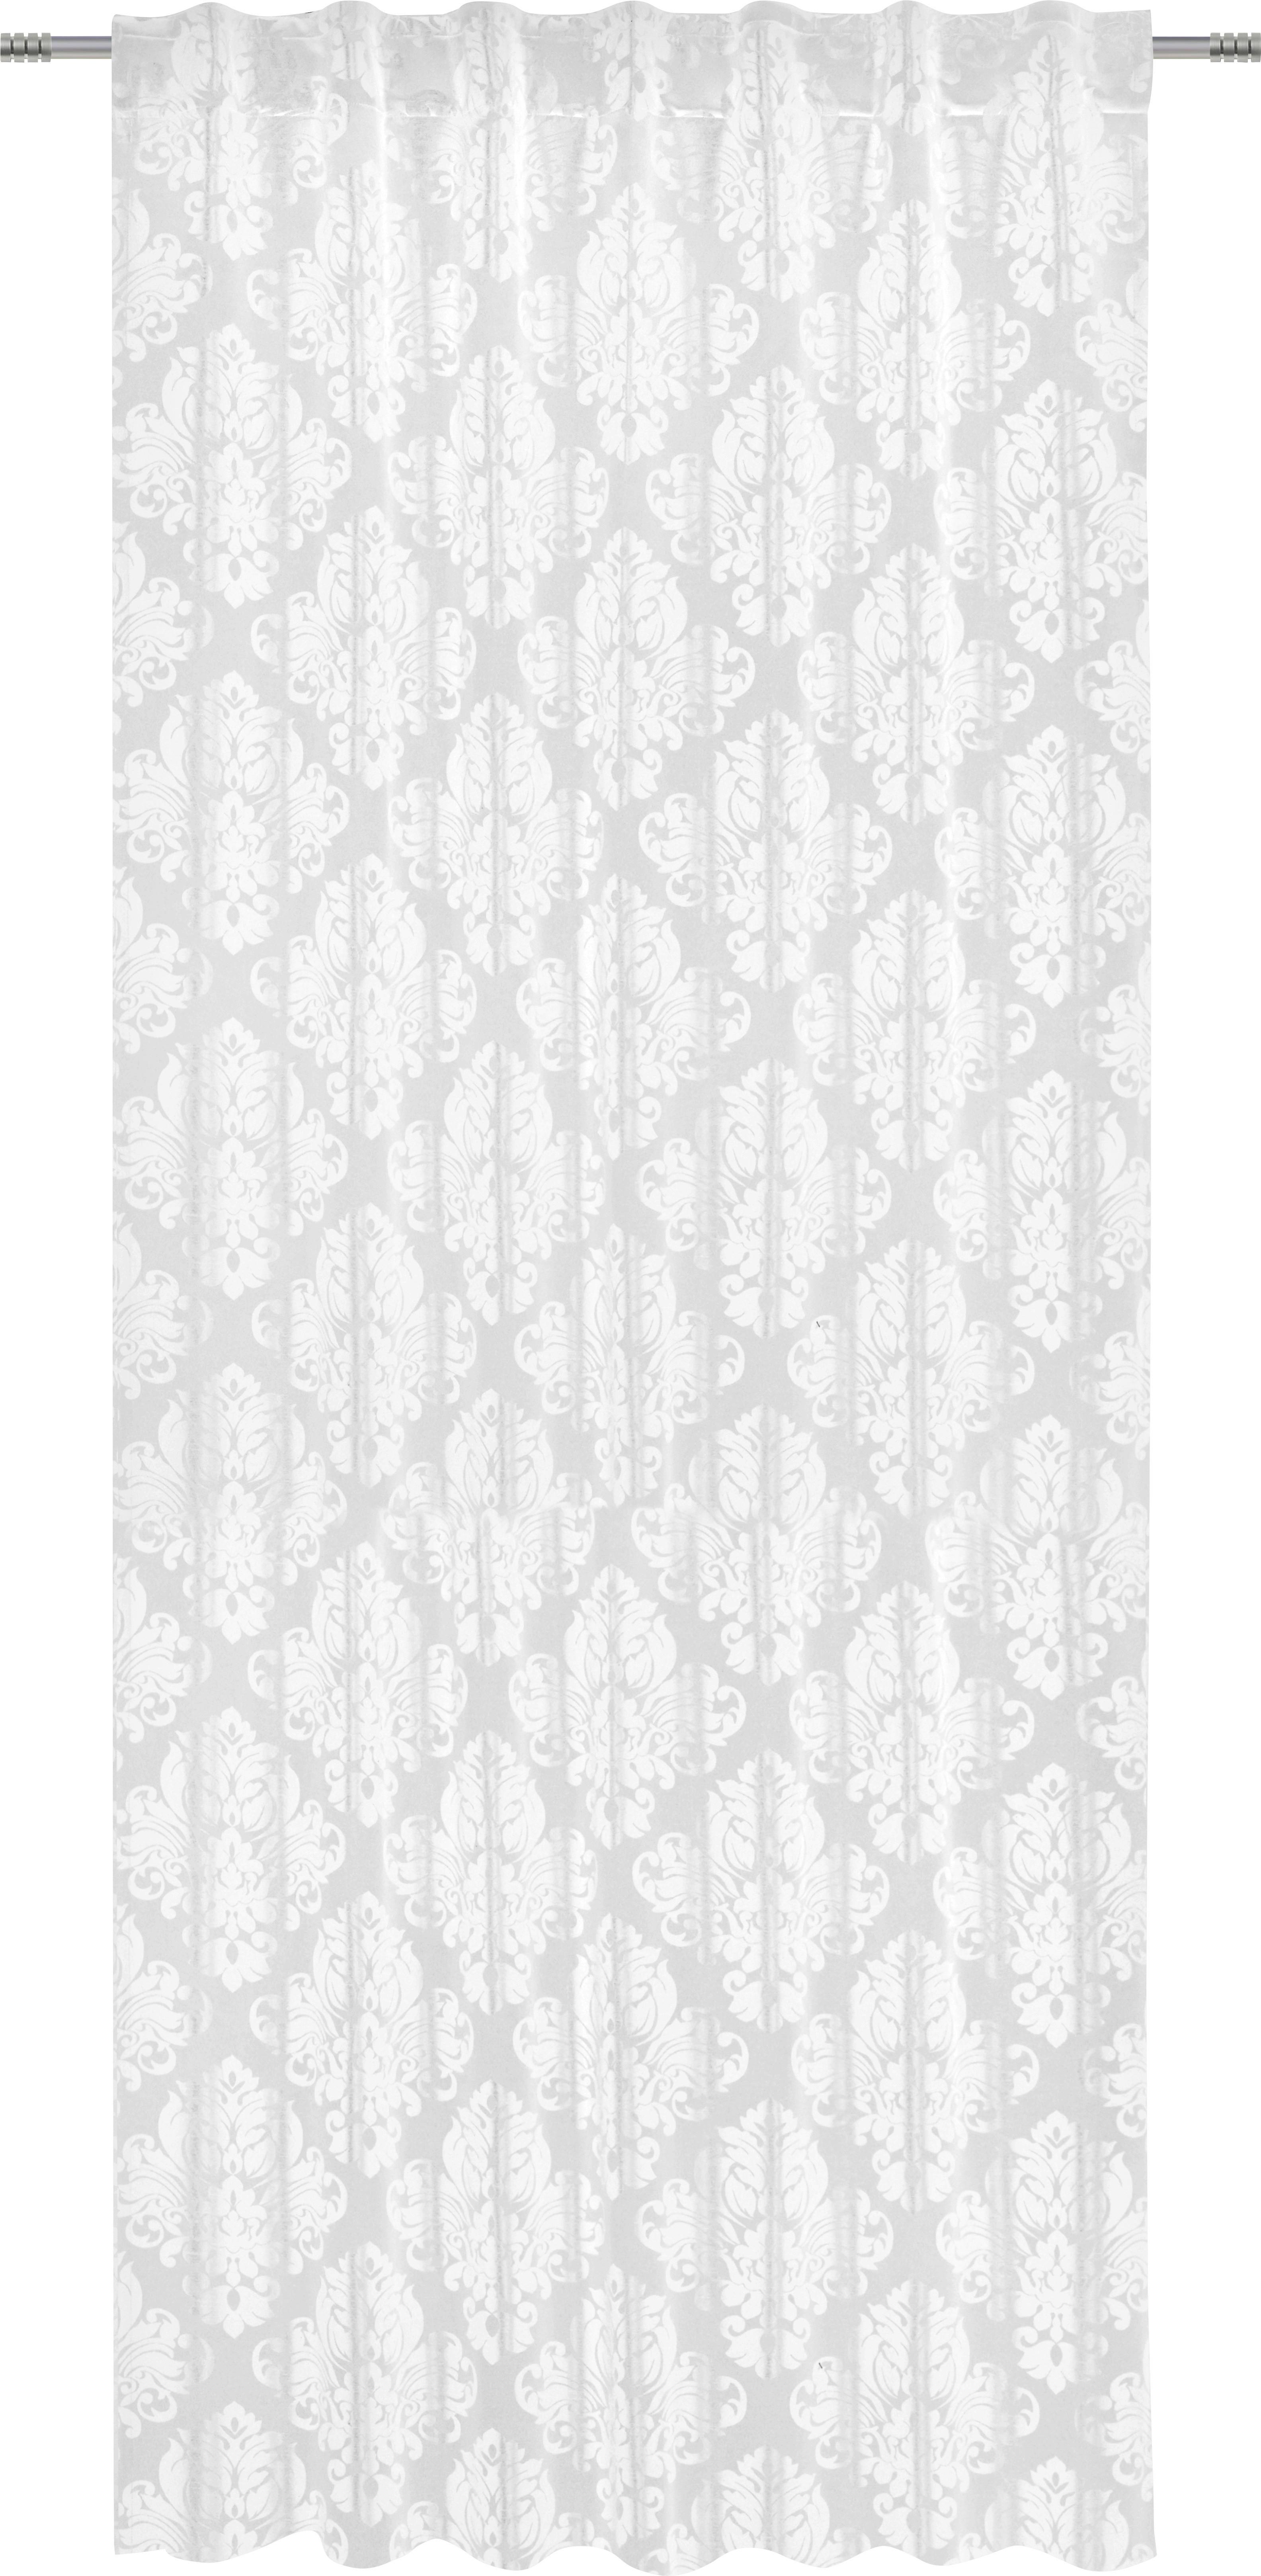 Schlaufenvorhang Charles in Weiß ca. 140x245cm - Weiß, LIFESTYLE, Textil (140/245cm) - Modern Living